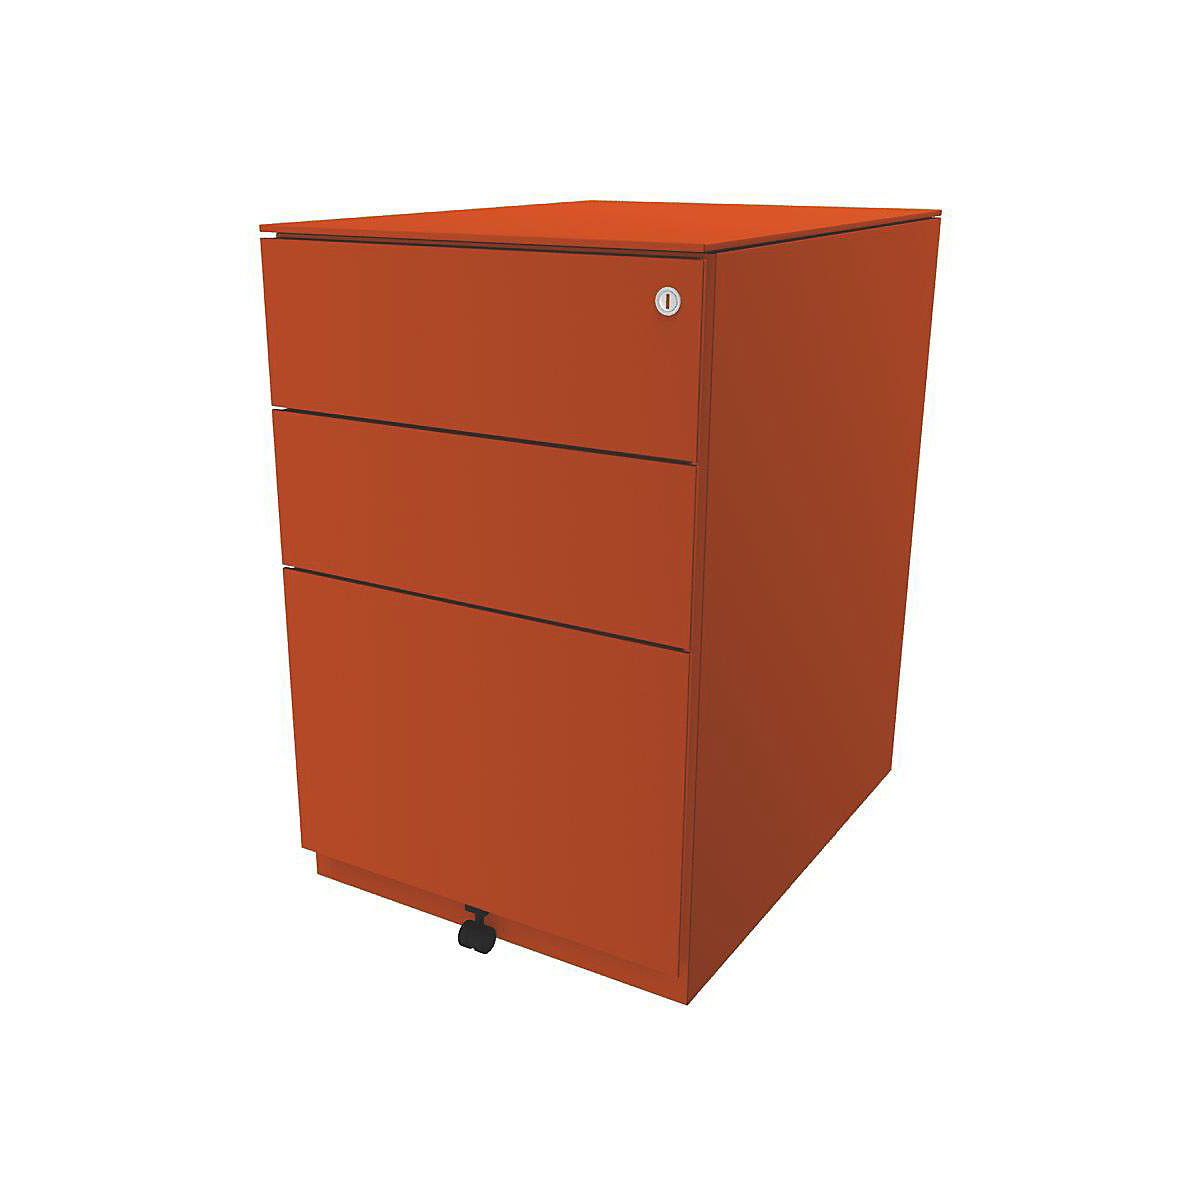 Pojazdný kontajner Note™, s 2 univerzálnymi zásuvkami, 1 závesná registratúra – BISLEY, v x š x h 652 x 420 x 565 mm, s hornou doskou, oranžová-8